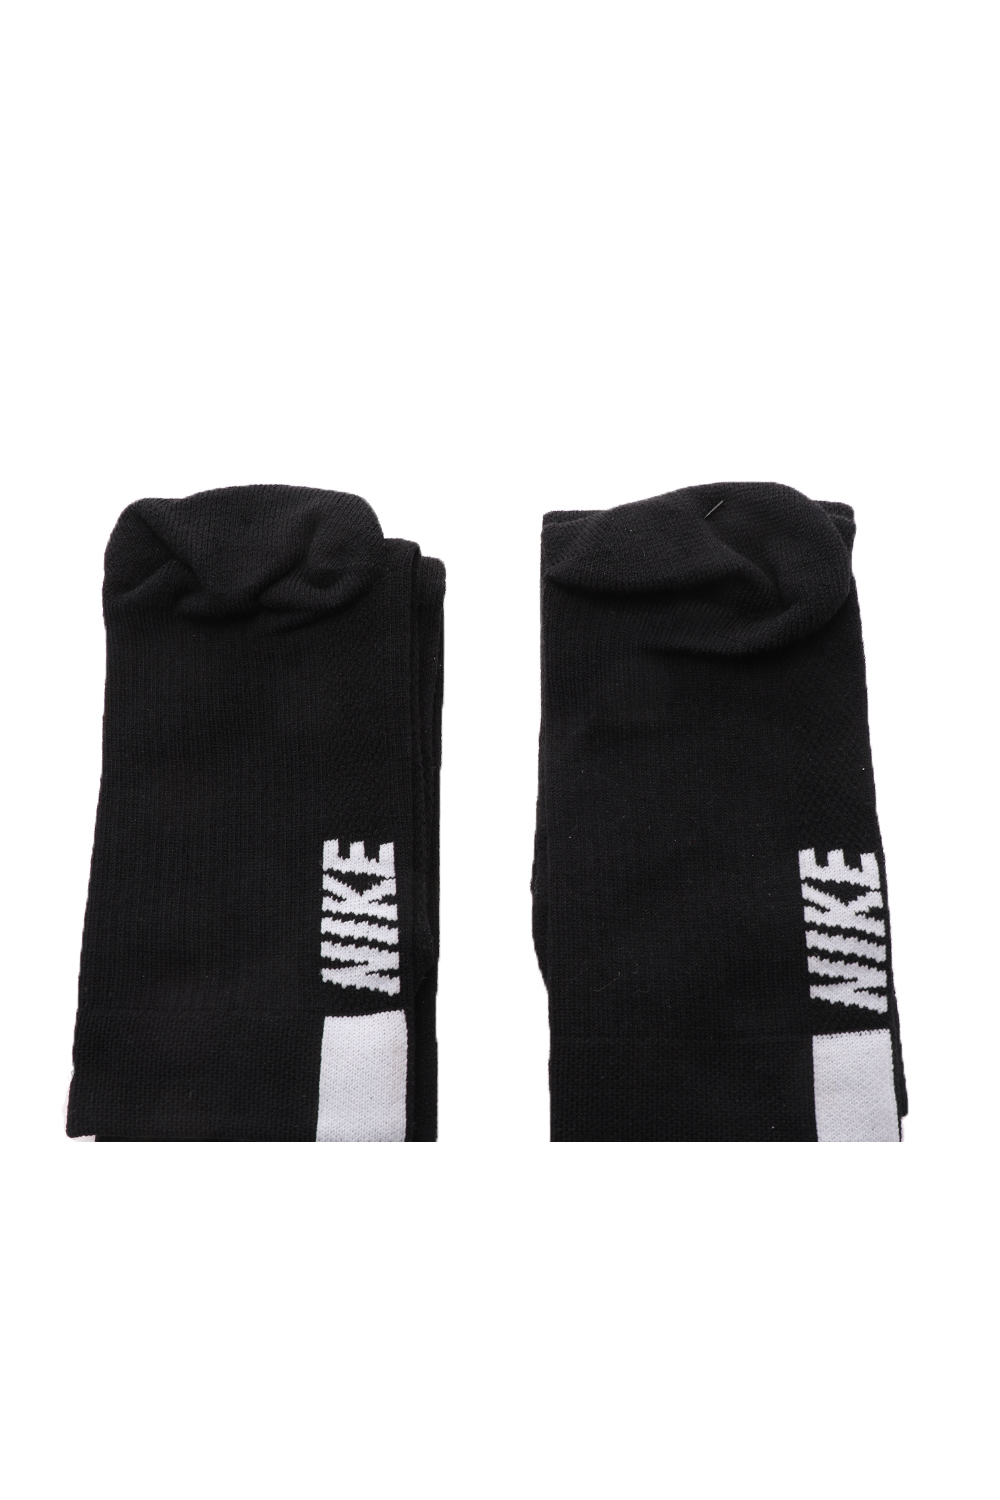 NIKE – Unisex κάλτσες σετ των 2 NIKE MLTPLIER μαύρες 1691258.1-7191